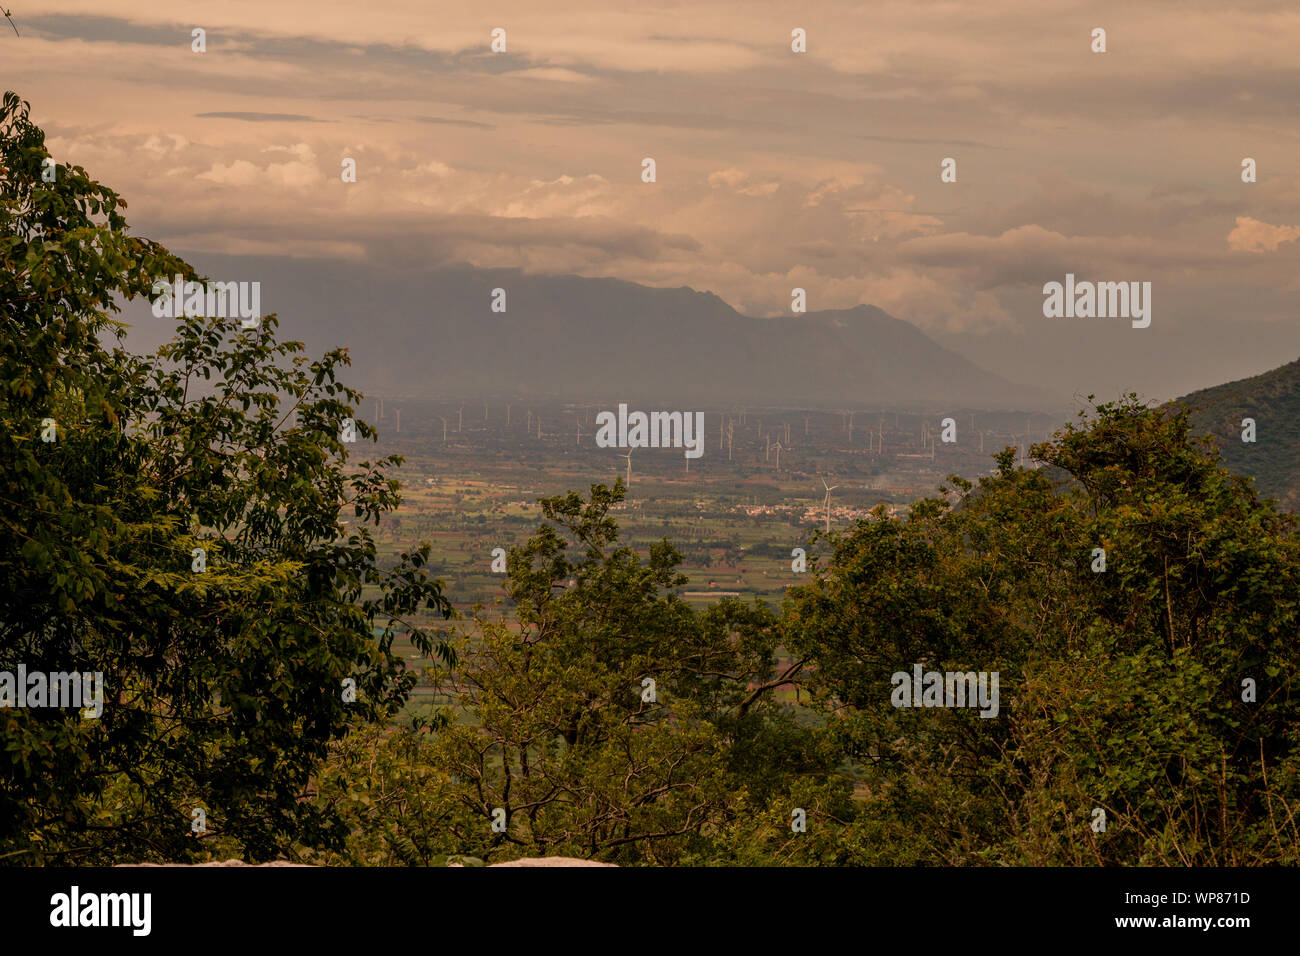 Bellissimo paesaggio immagine dell'orizzonte con il mulino a vento agriturismo a distanza. Foto Stock